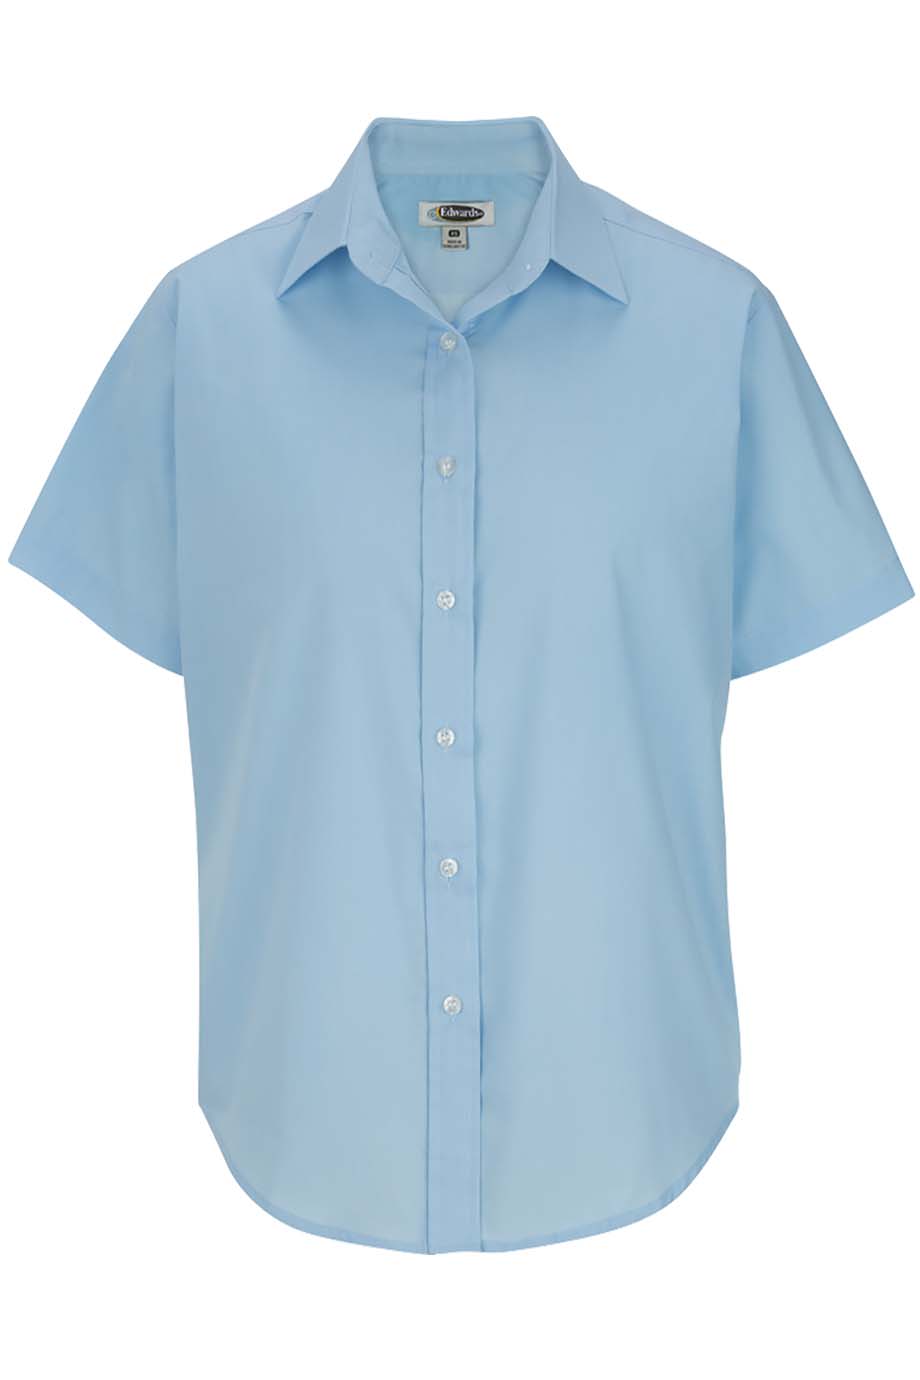 Edwards Ladies Short Sleeve Value Broadcloth Shirt-Edwards